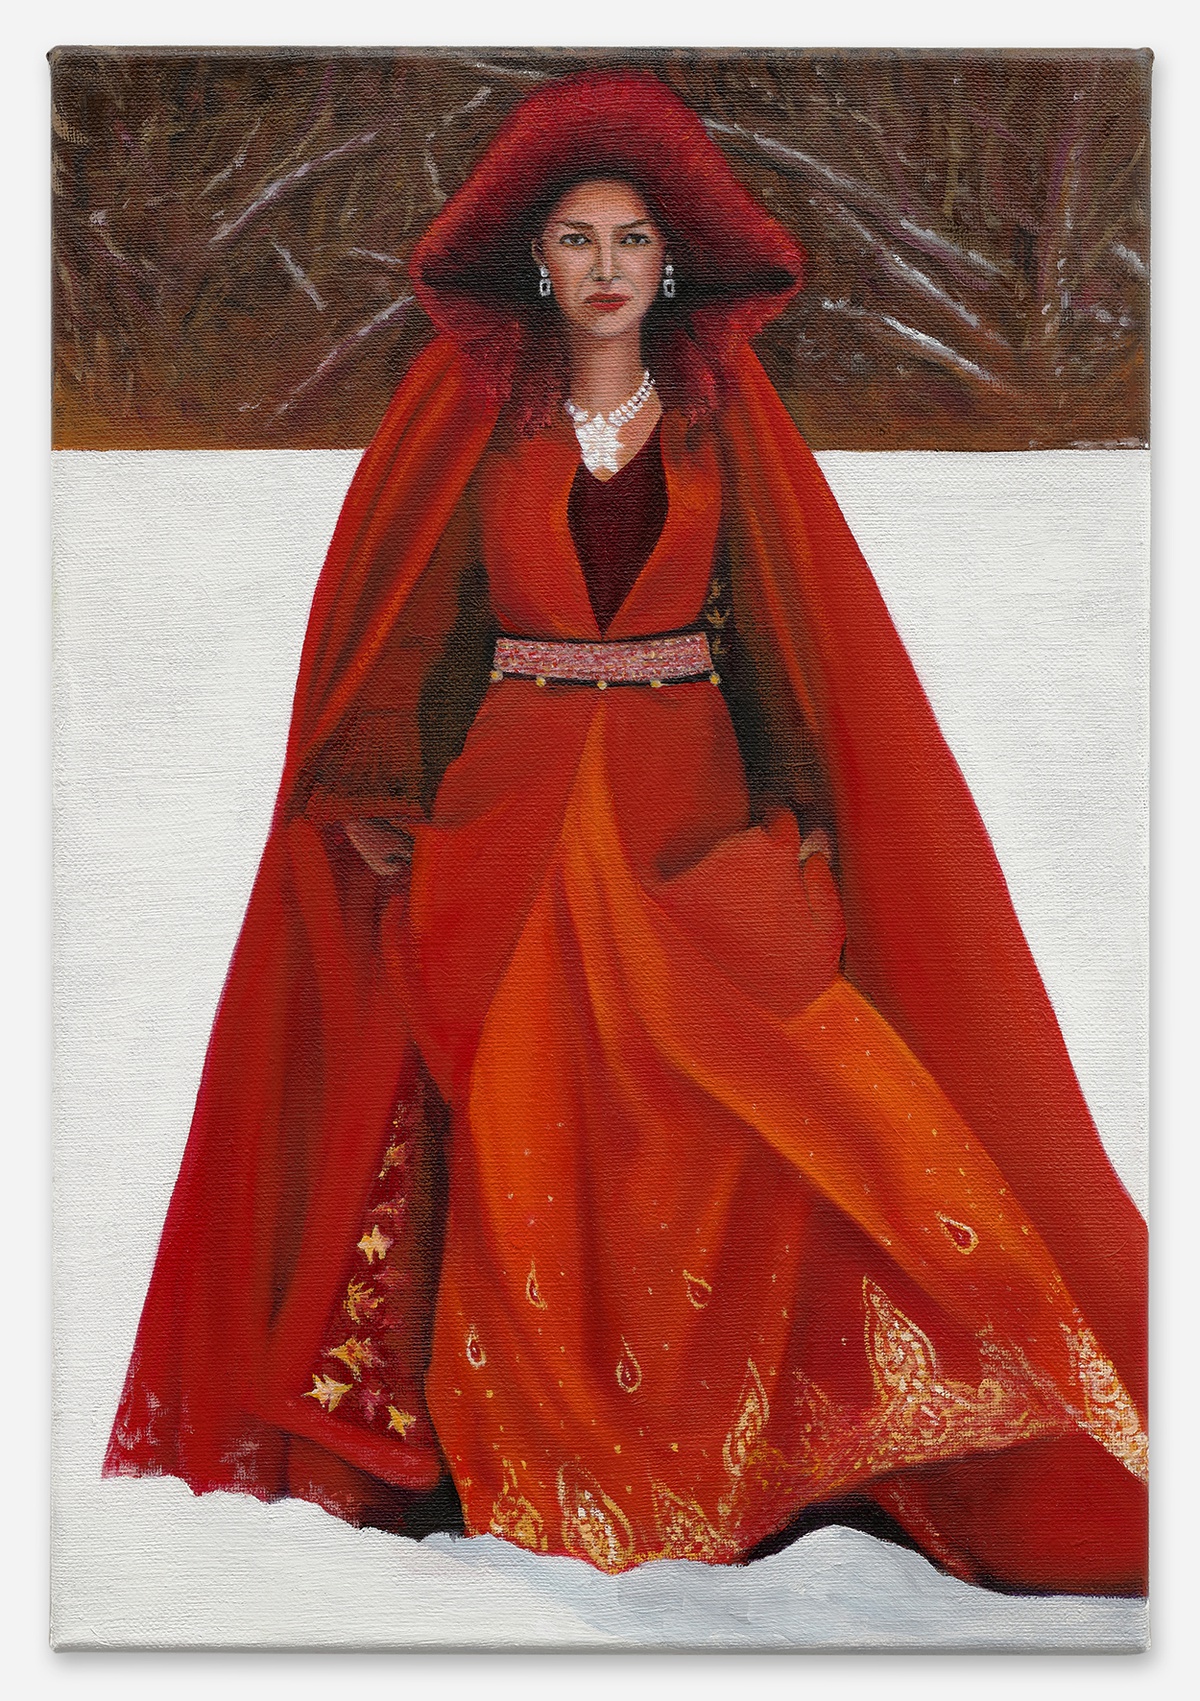 Mathis Gasser, Chrisjen Avasarala, 2022oil on canvas44 x 30 cm